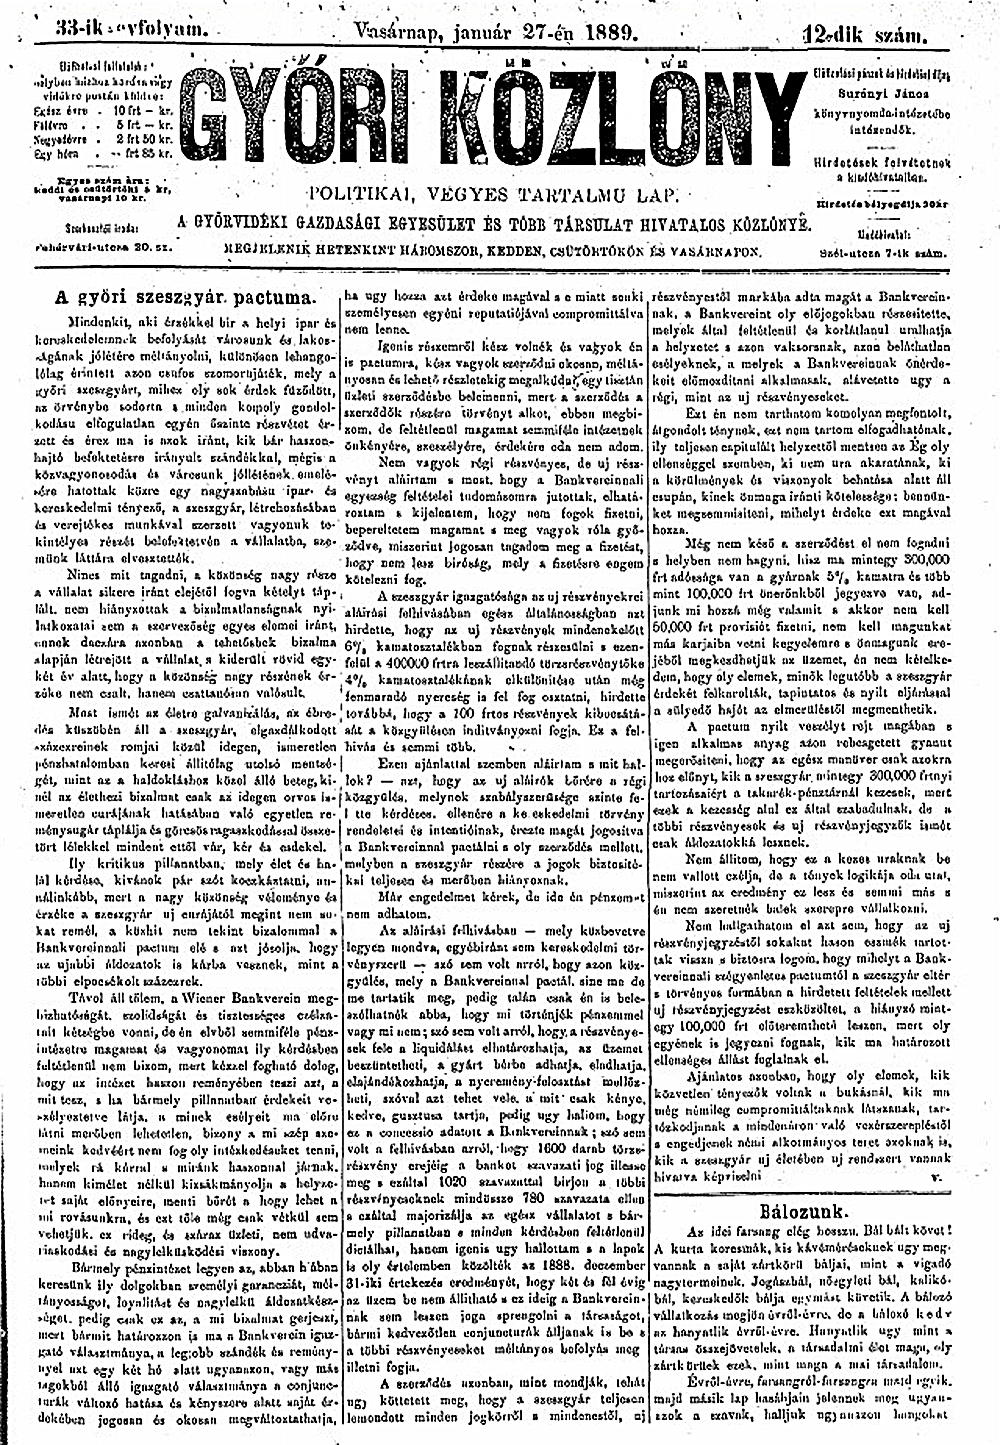 Győri Közlöny 1889. január 27. - Egész oldalas cikk a Wiener Bankverein-nel létrejött szerződésről